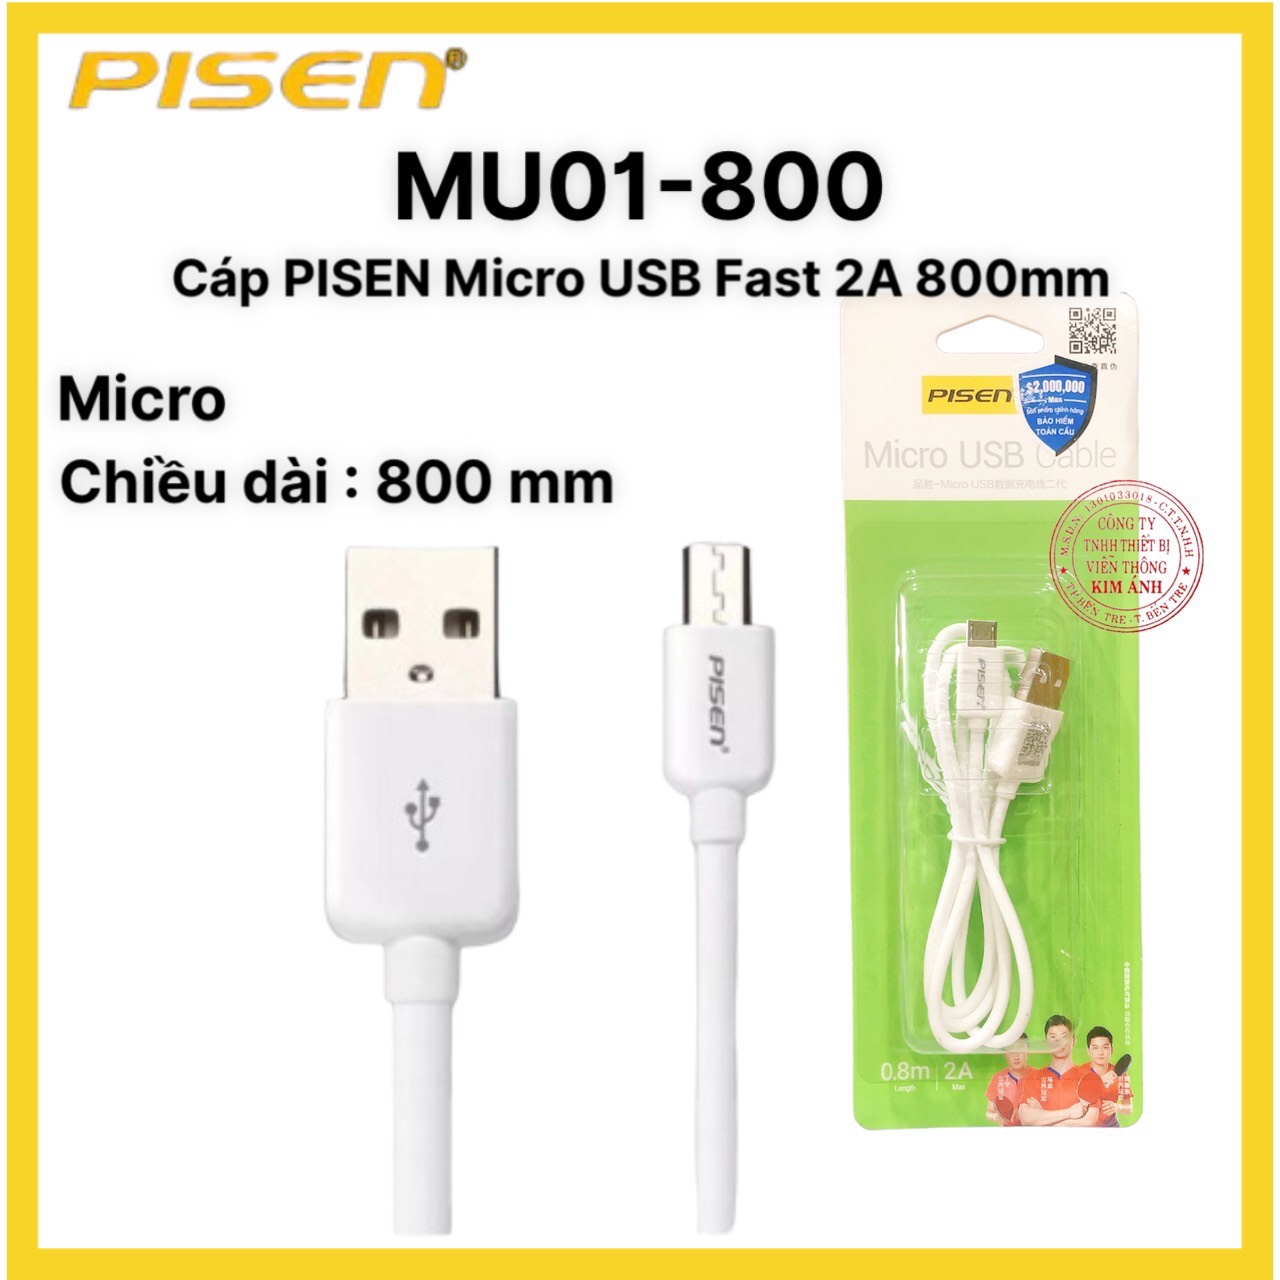 Cáp Pisen Micro USB 2A 800mm MU01-800- Hàng chính hãng